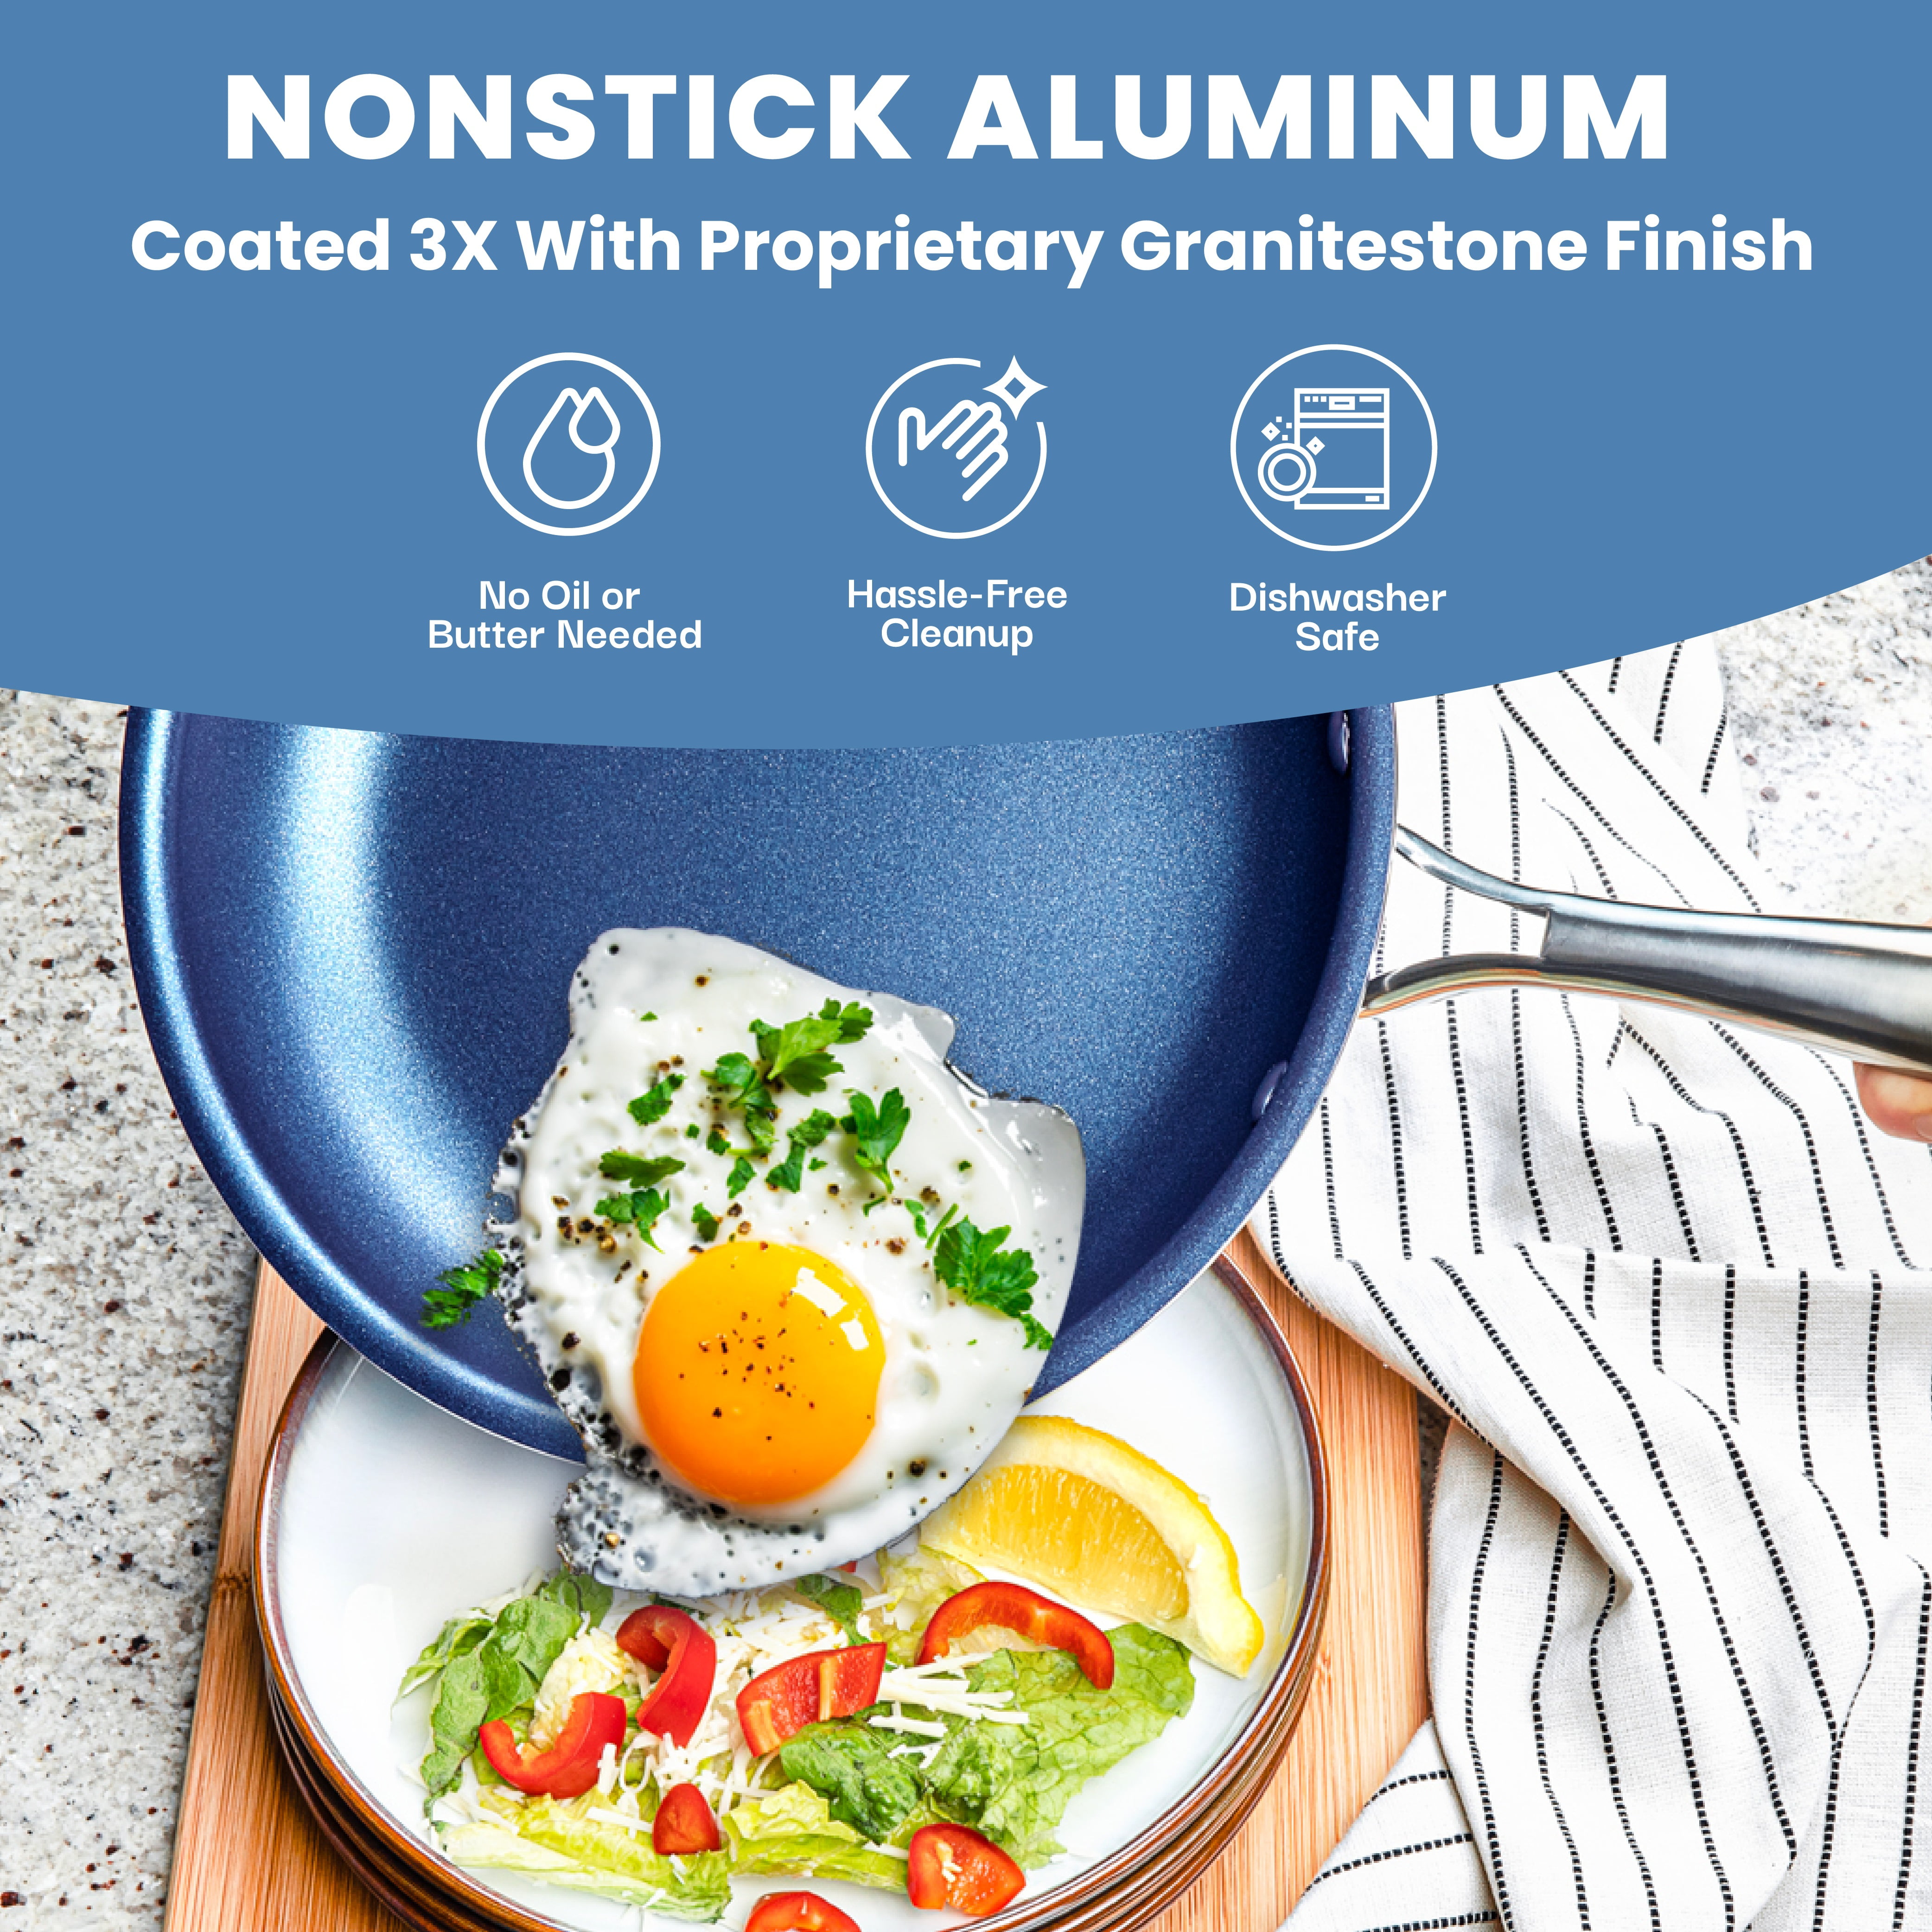 Granitestone 20-Piece Complete Nonstick Cookware & Bakeware Set 